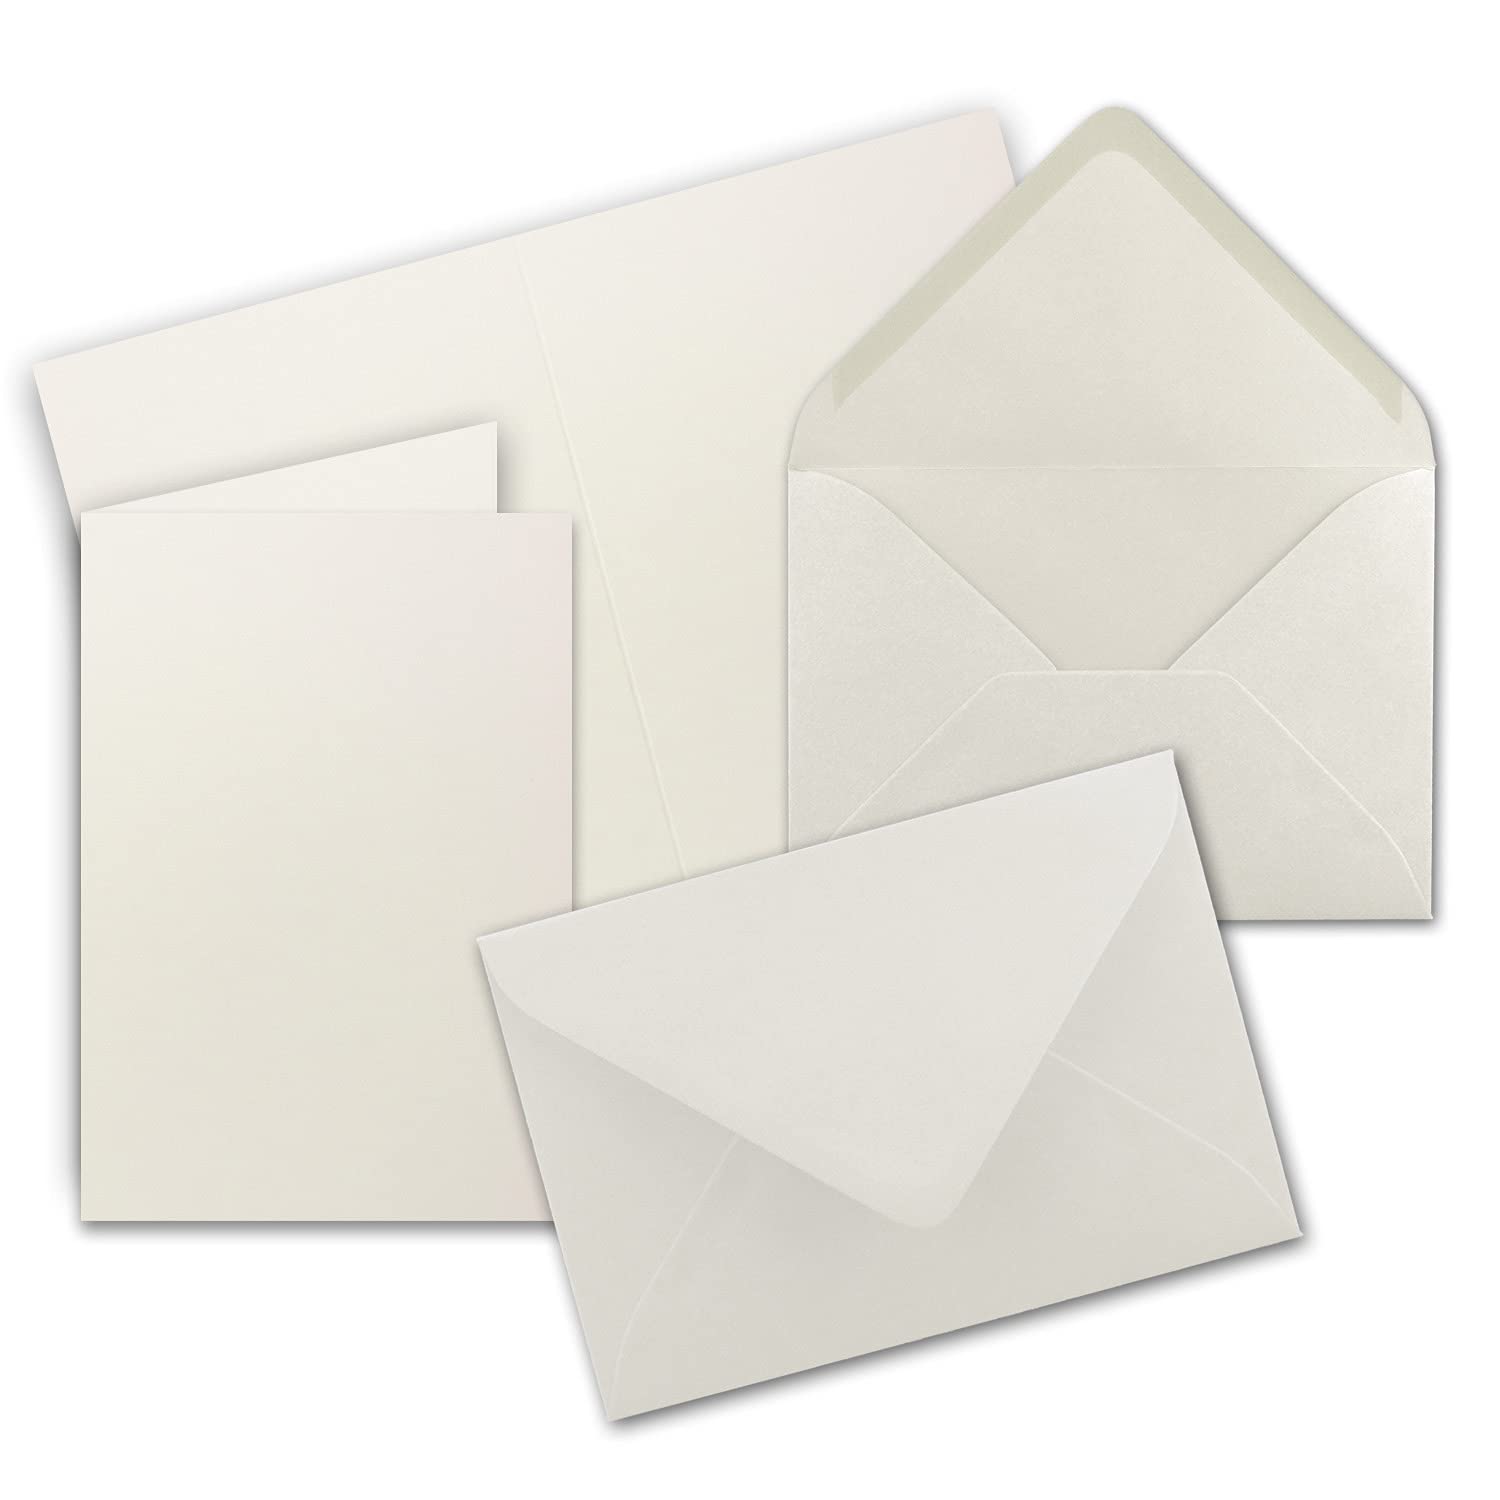 60x Faltkarten Set mit Briefumschlägen DIN A6 / C6 - Naturweiß (Weiß) - 14,8 x 10,5 cm (105 x 148) - Doppelkarten Set - Serie FarbenFroh